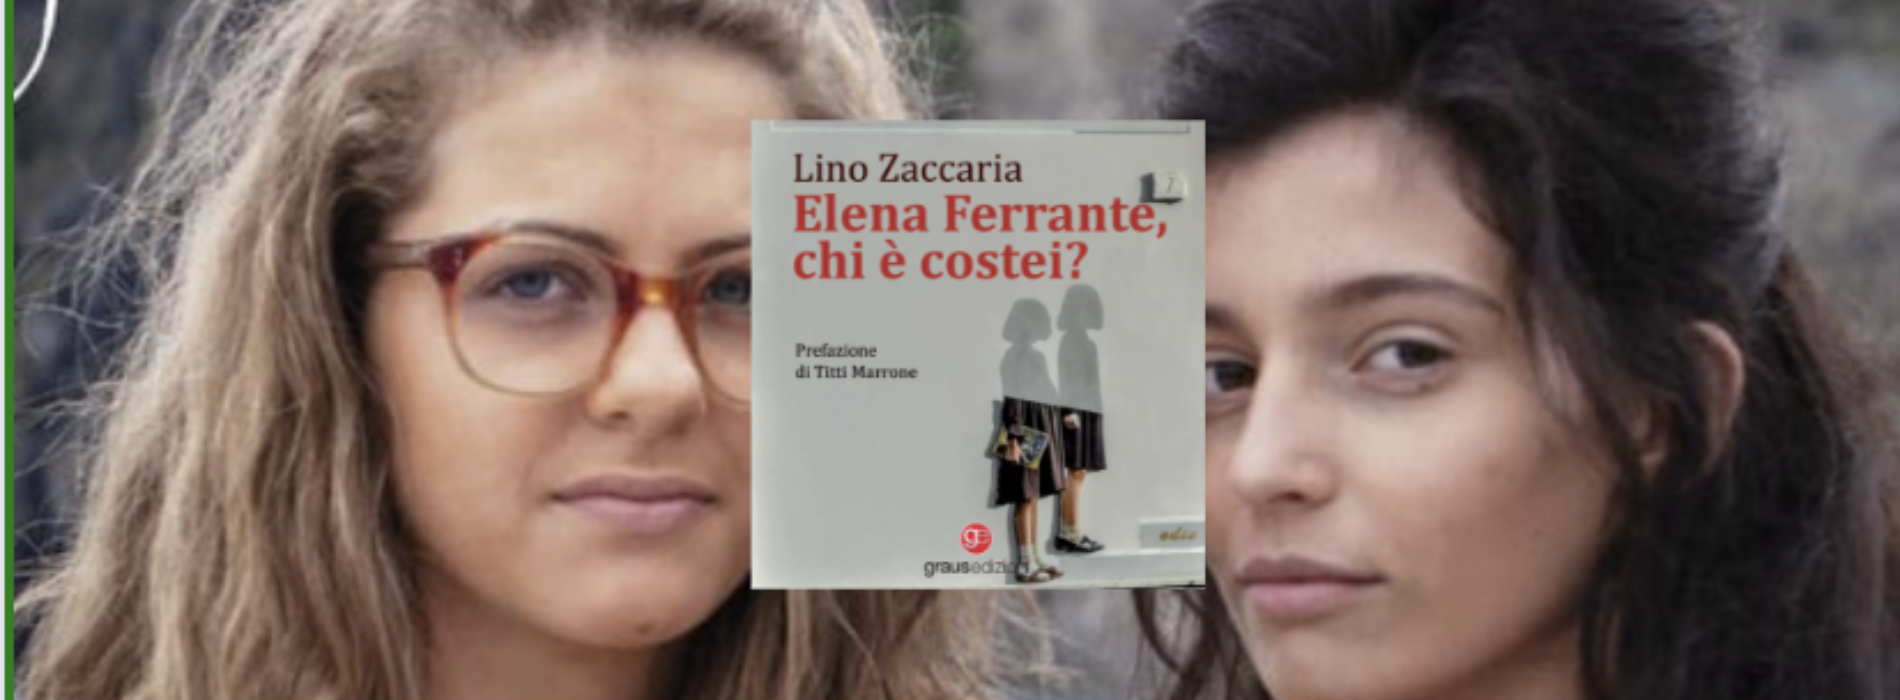 Elena Ferrante, chi è costei? Il libro di Lino Zaccaria al Diana